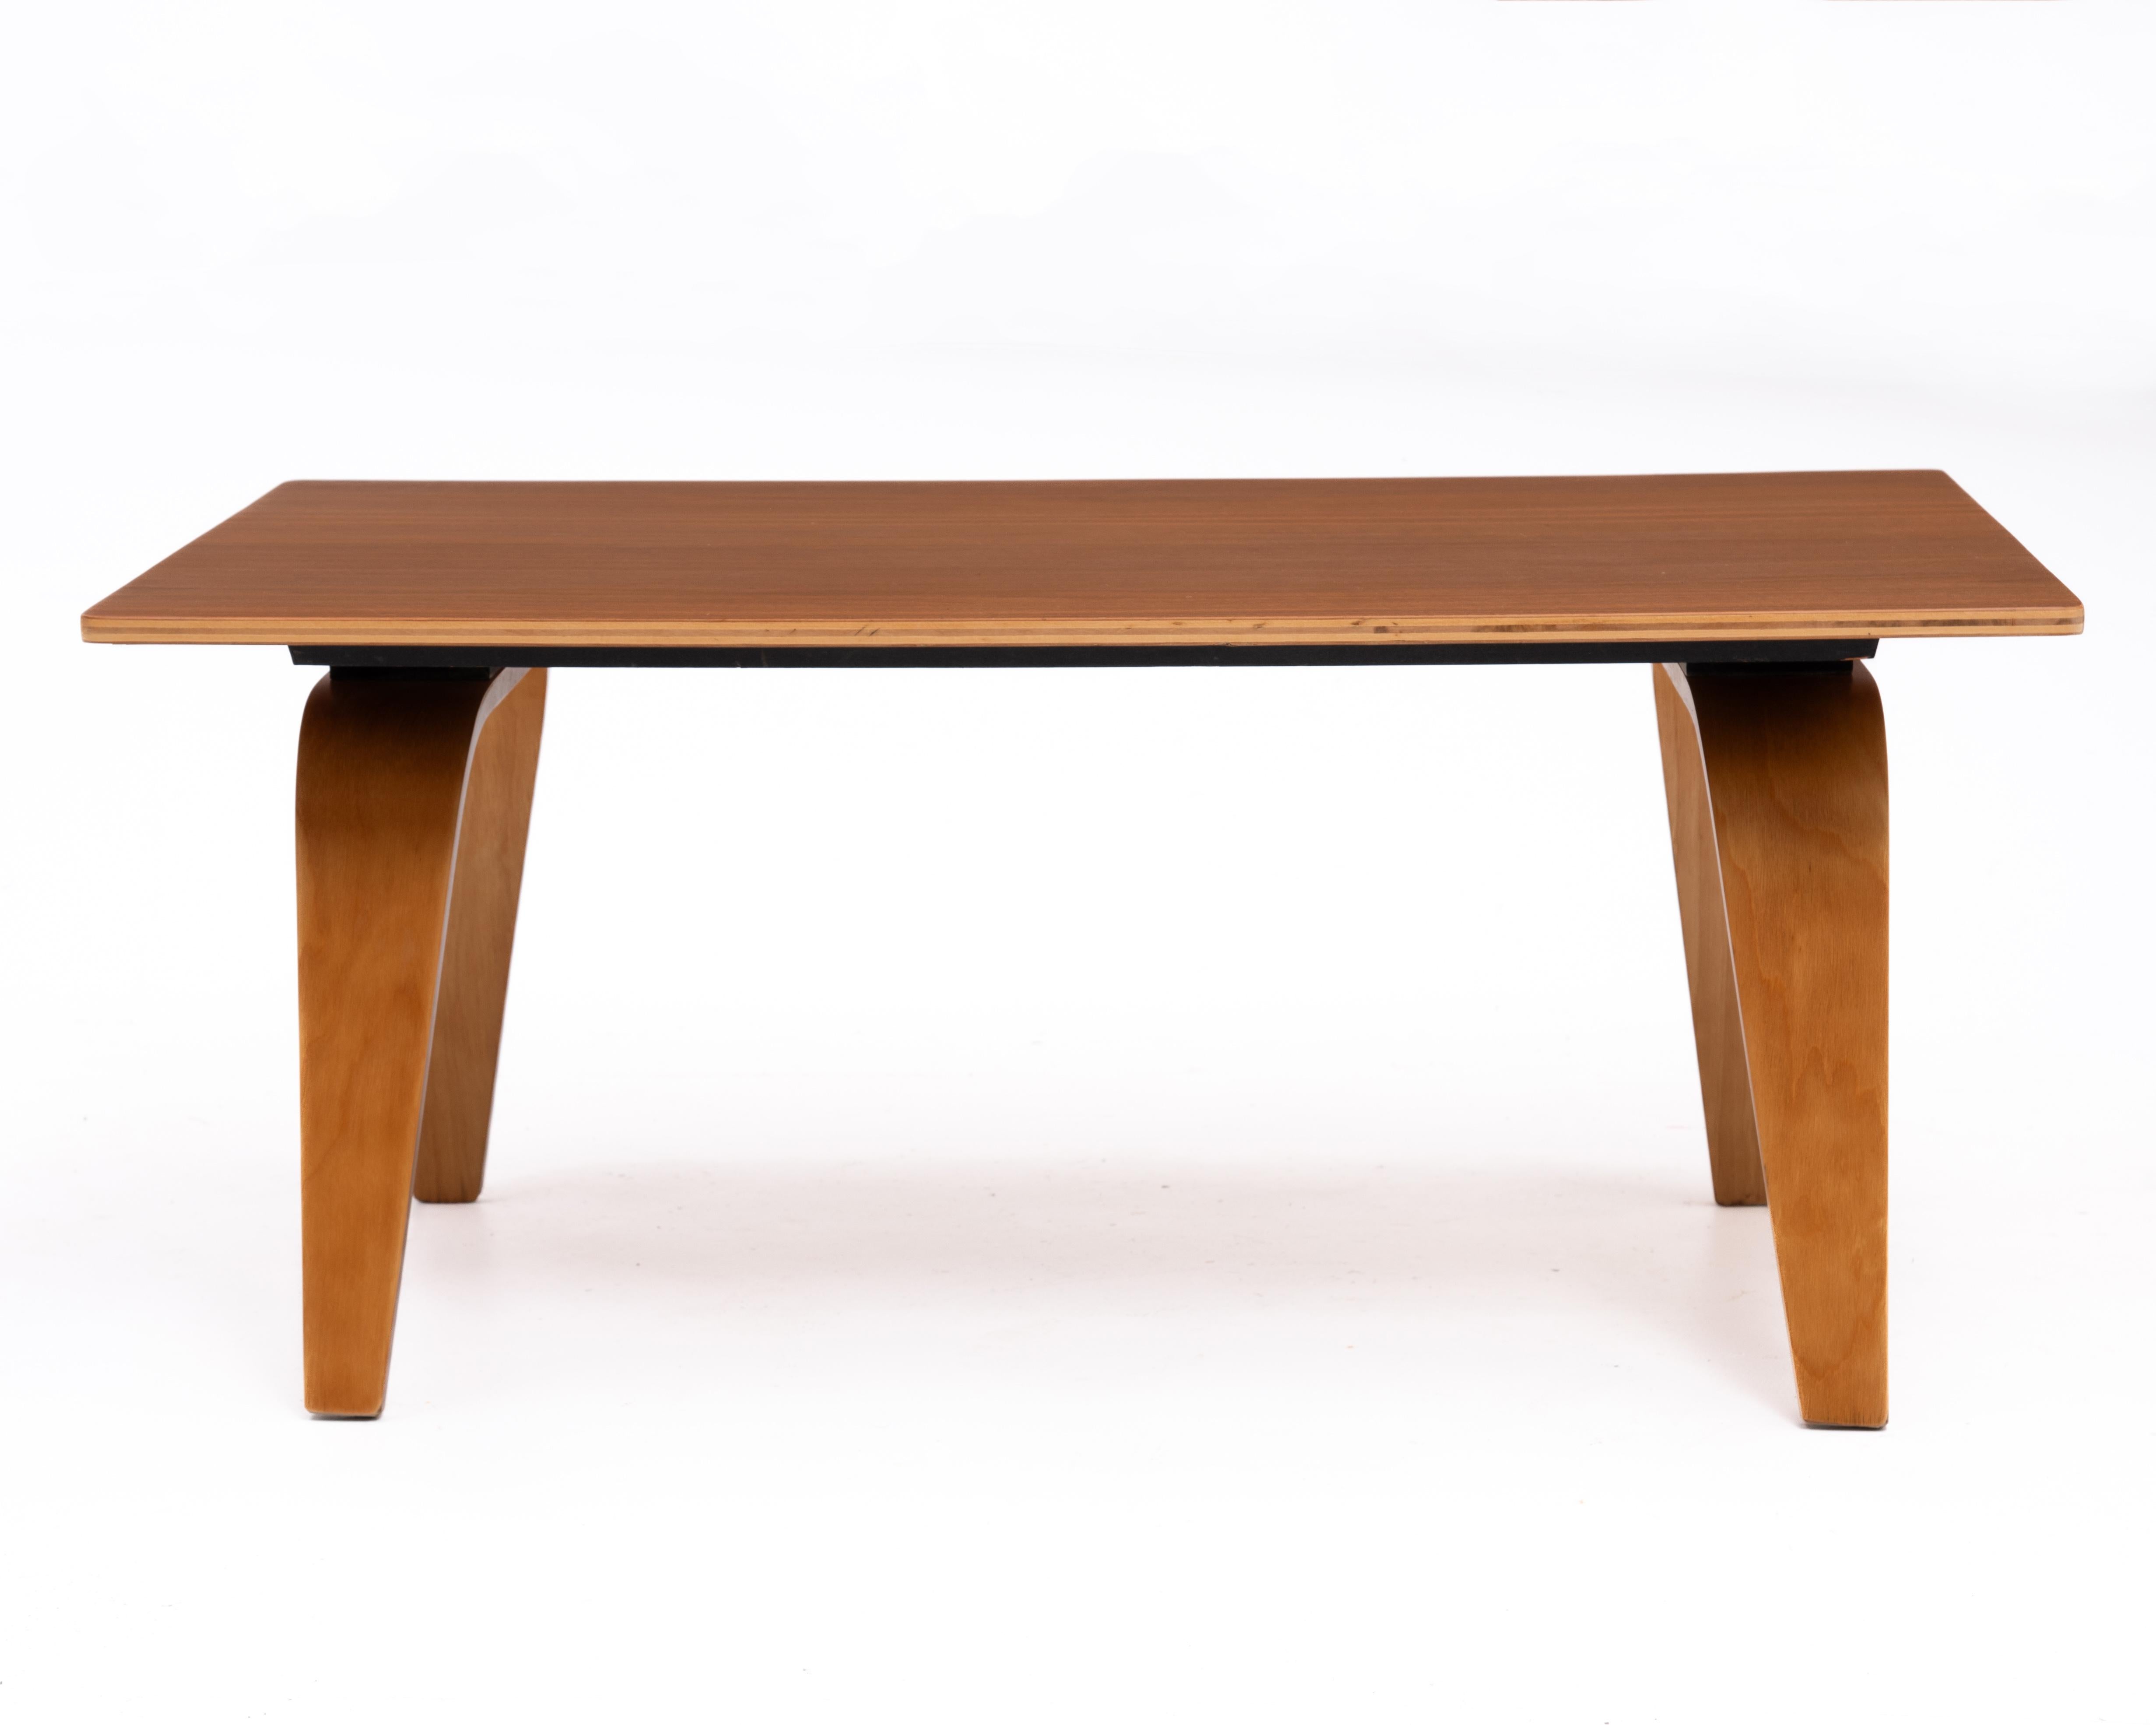 Rare table basse CTW1 de Charles et Ray Eames. Une première version de la table basse OTW (Oblong Table Wood). Le CTW1 a été introduit dans les années 1940 et a été produit pour la première fois par Evans Plywood Company. L'inscription manuscrite